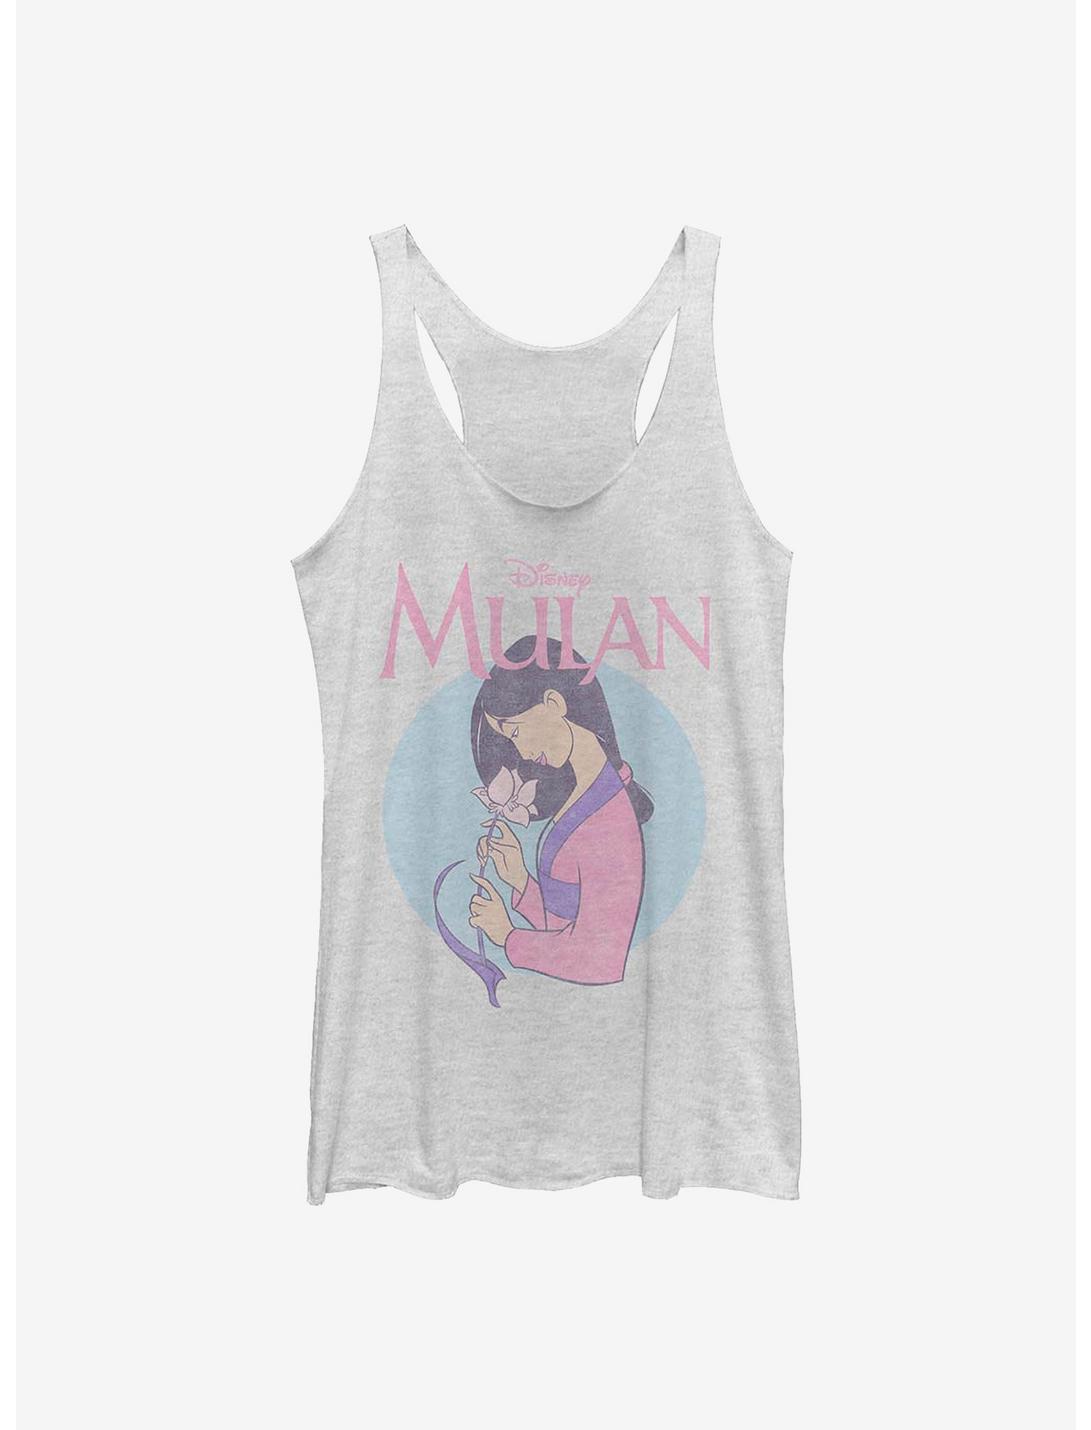 Plus Size Disney Mulan Vintage Mulan Womens Tank Top, WHITE HTR, hi-res